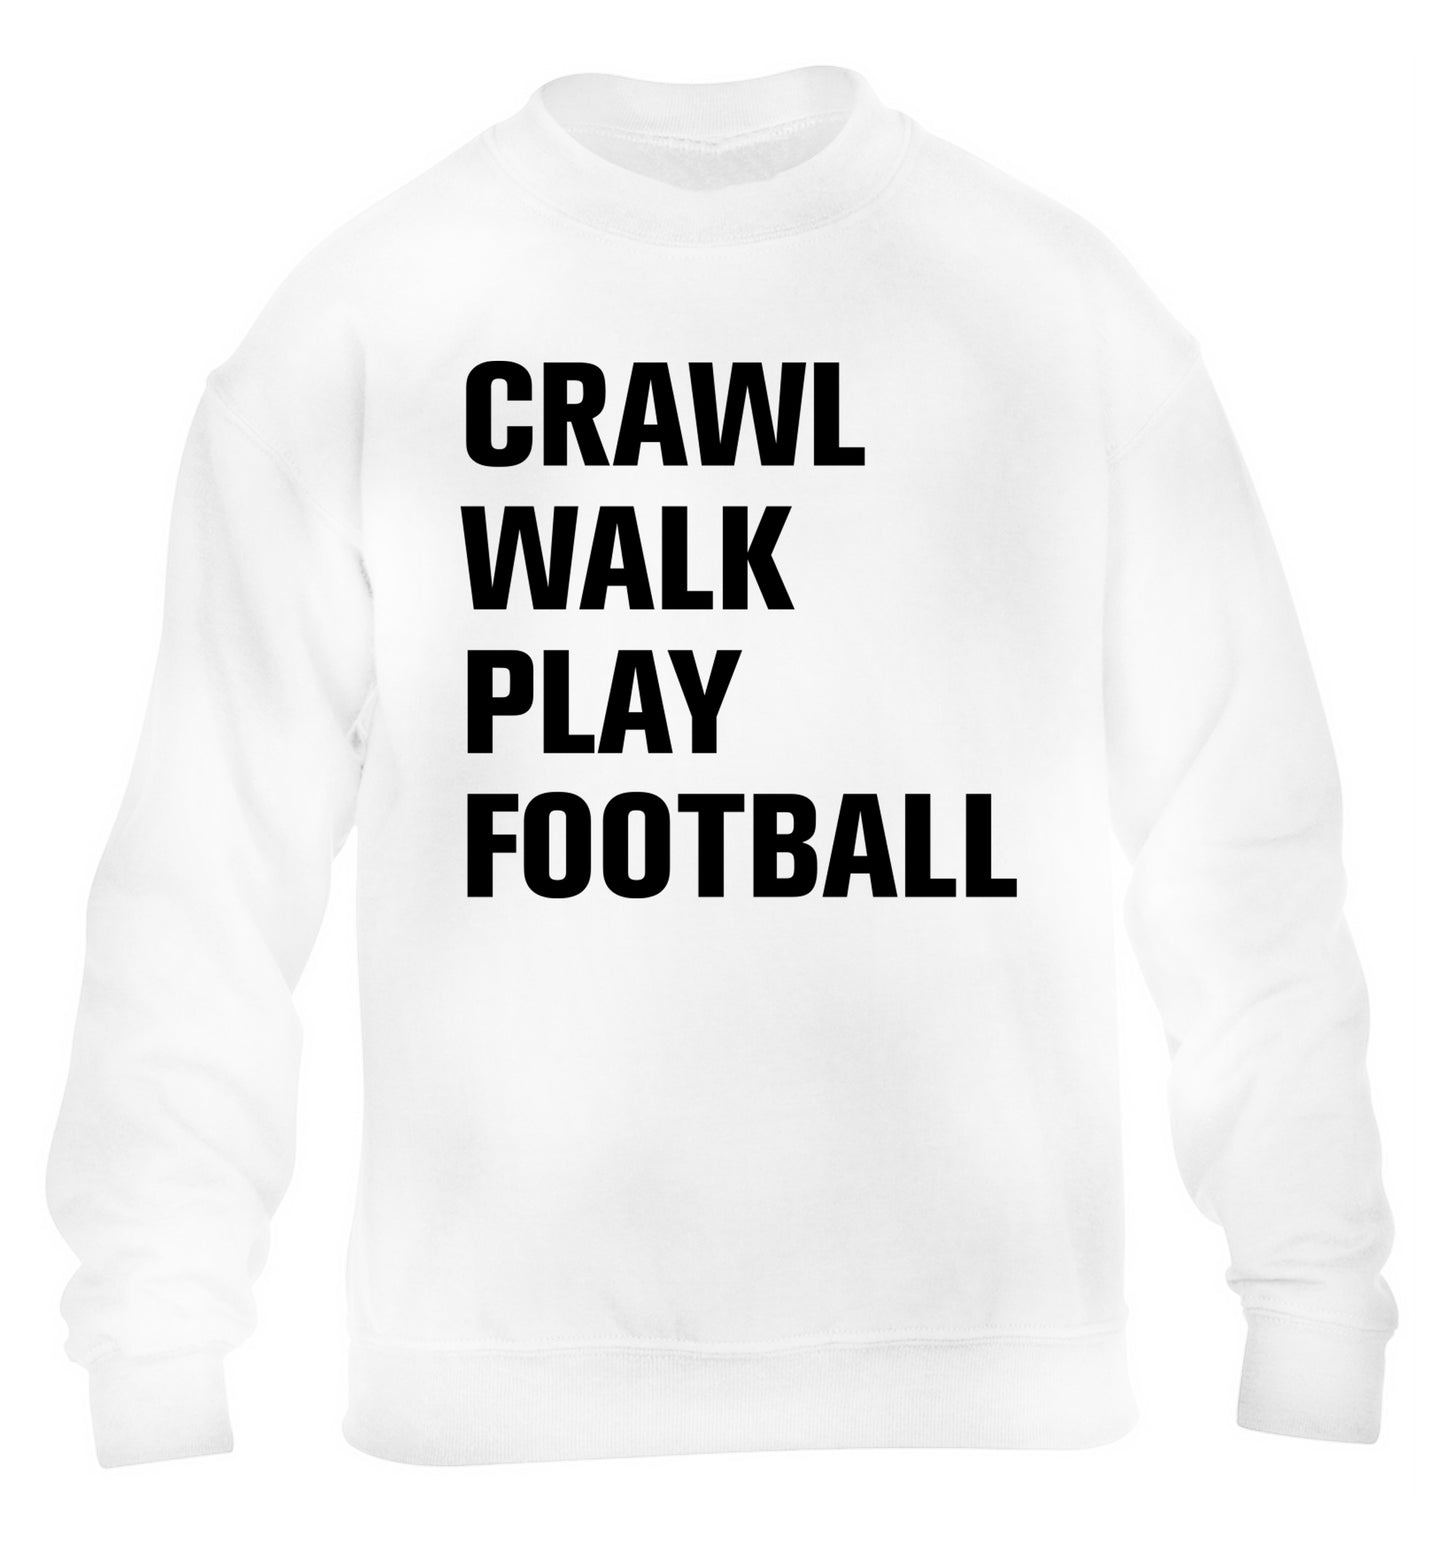 Crawl, walk, play football children's white sweater 12-13 Years